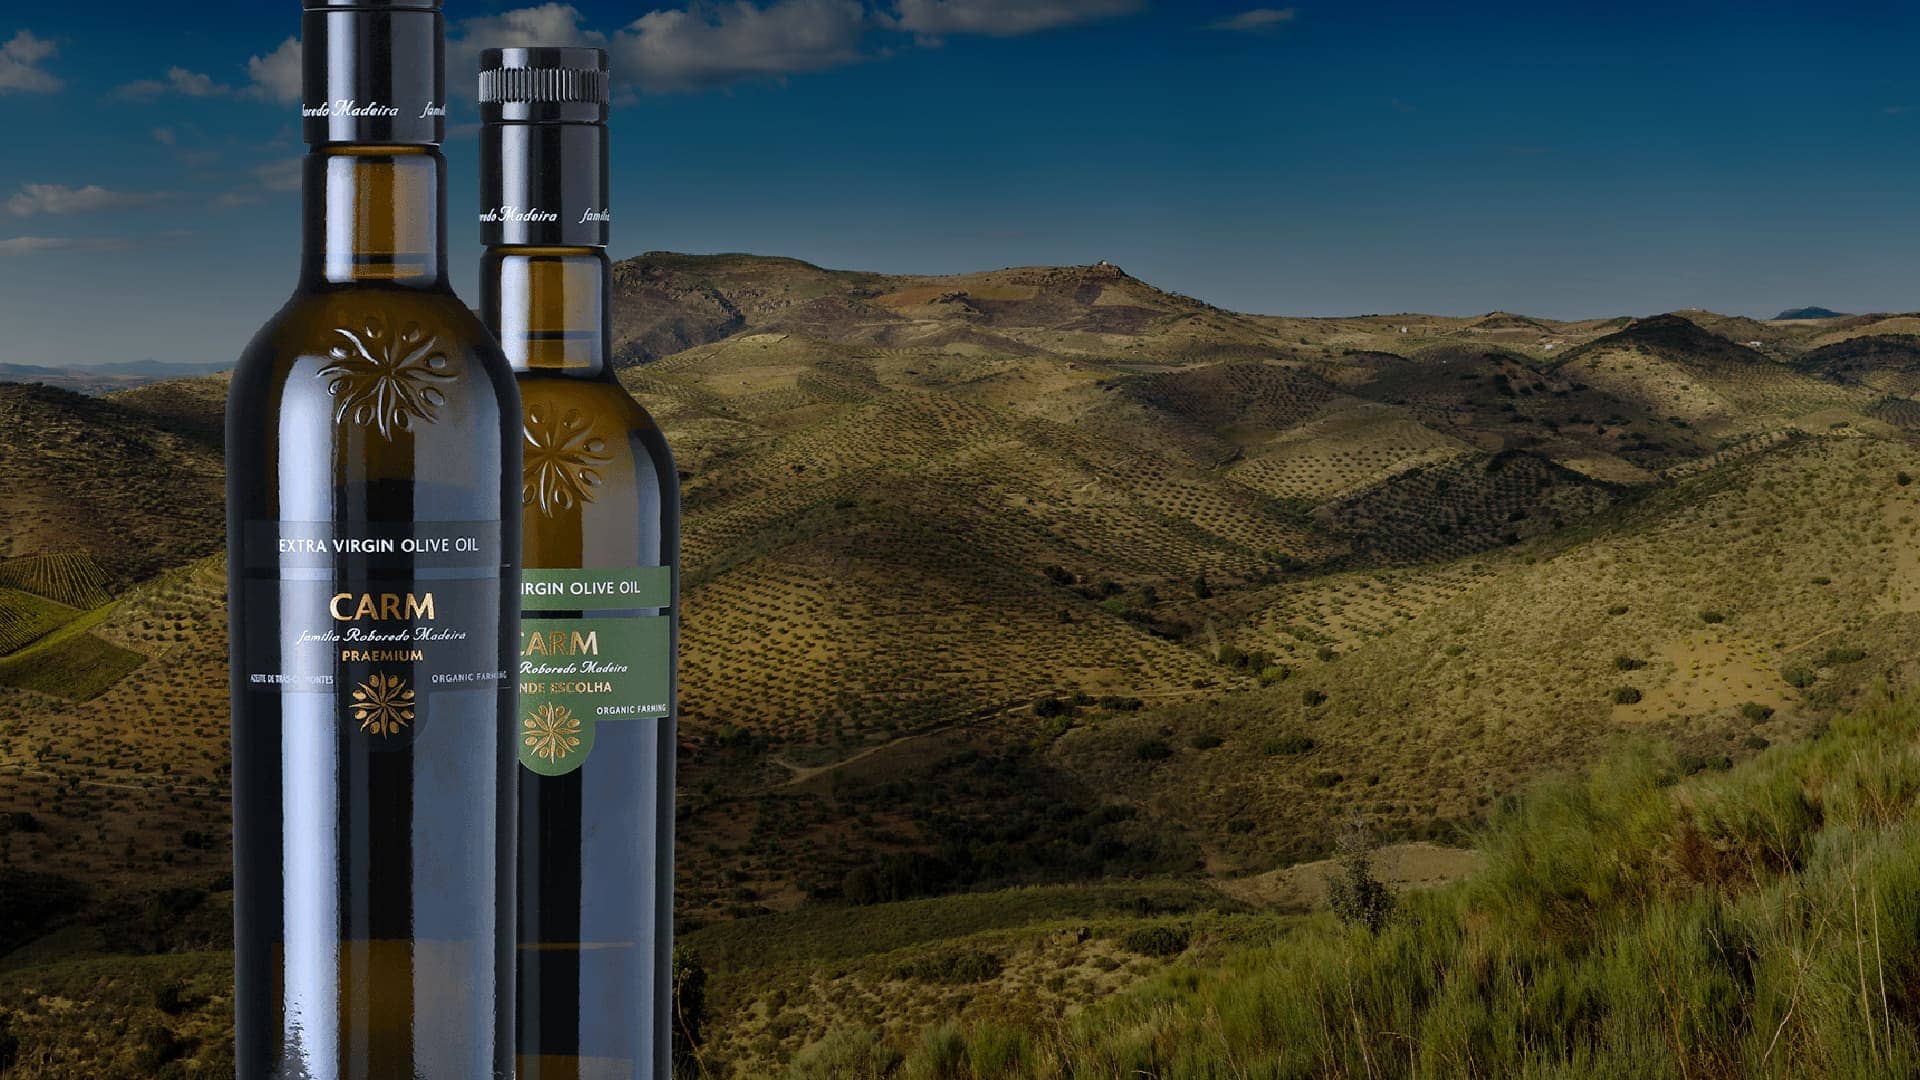 简介-carm-用高端橄榄油和葡萄酒-橄榄油时代来庆祝区域风味